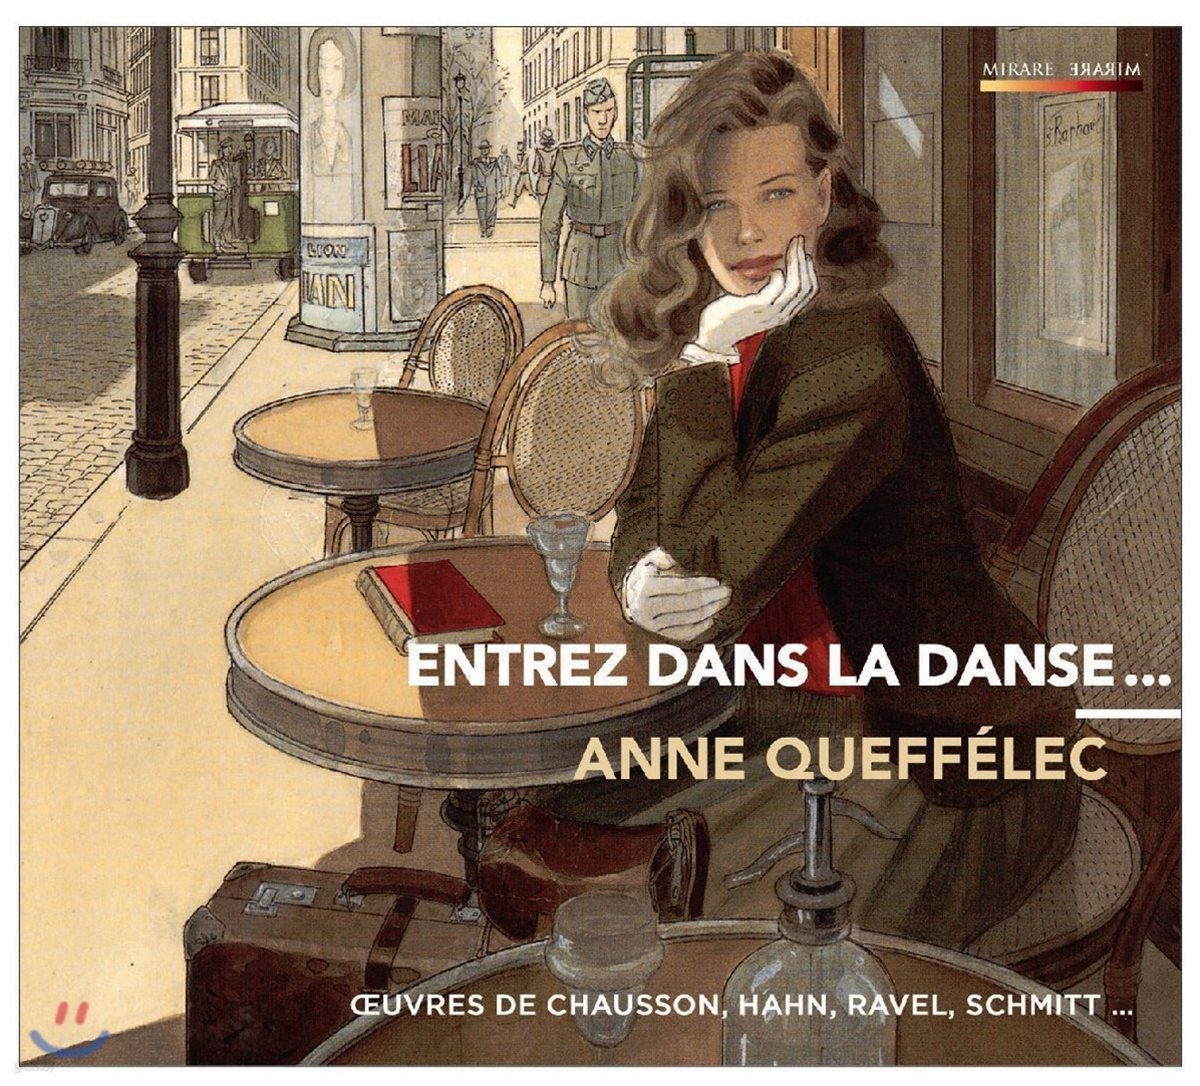 Anne Queffelec 다 함께 춤을 - 프랑스 피아노 소품집: 쇼송 / 라벨 / 드뷔시 / 슈미트 / 풀랑크 (Entrez Dans La Danse - Chausson / Hahn / Ravel / Schmitt / Poulenc) 안느 케펠레크